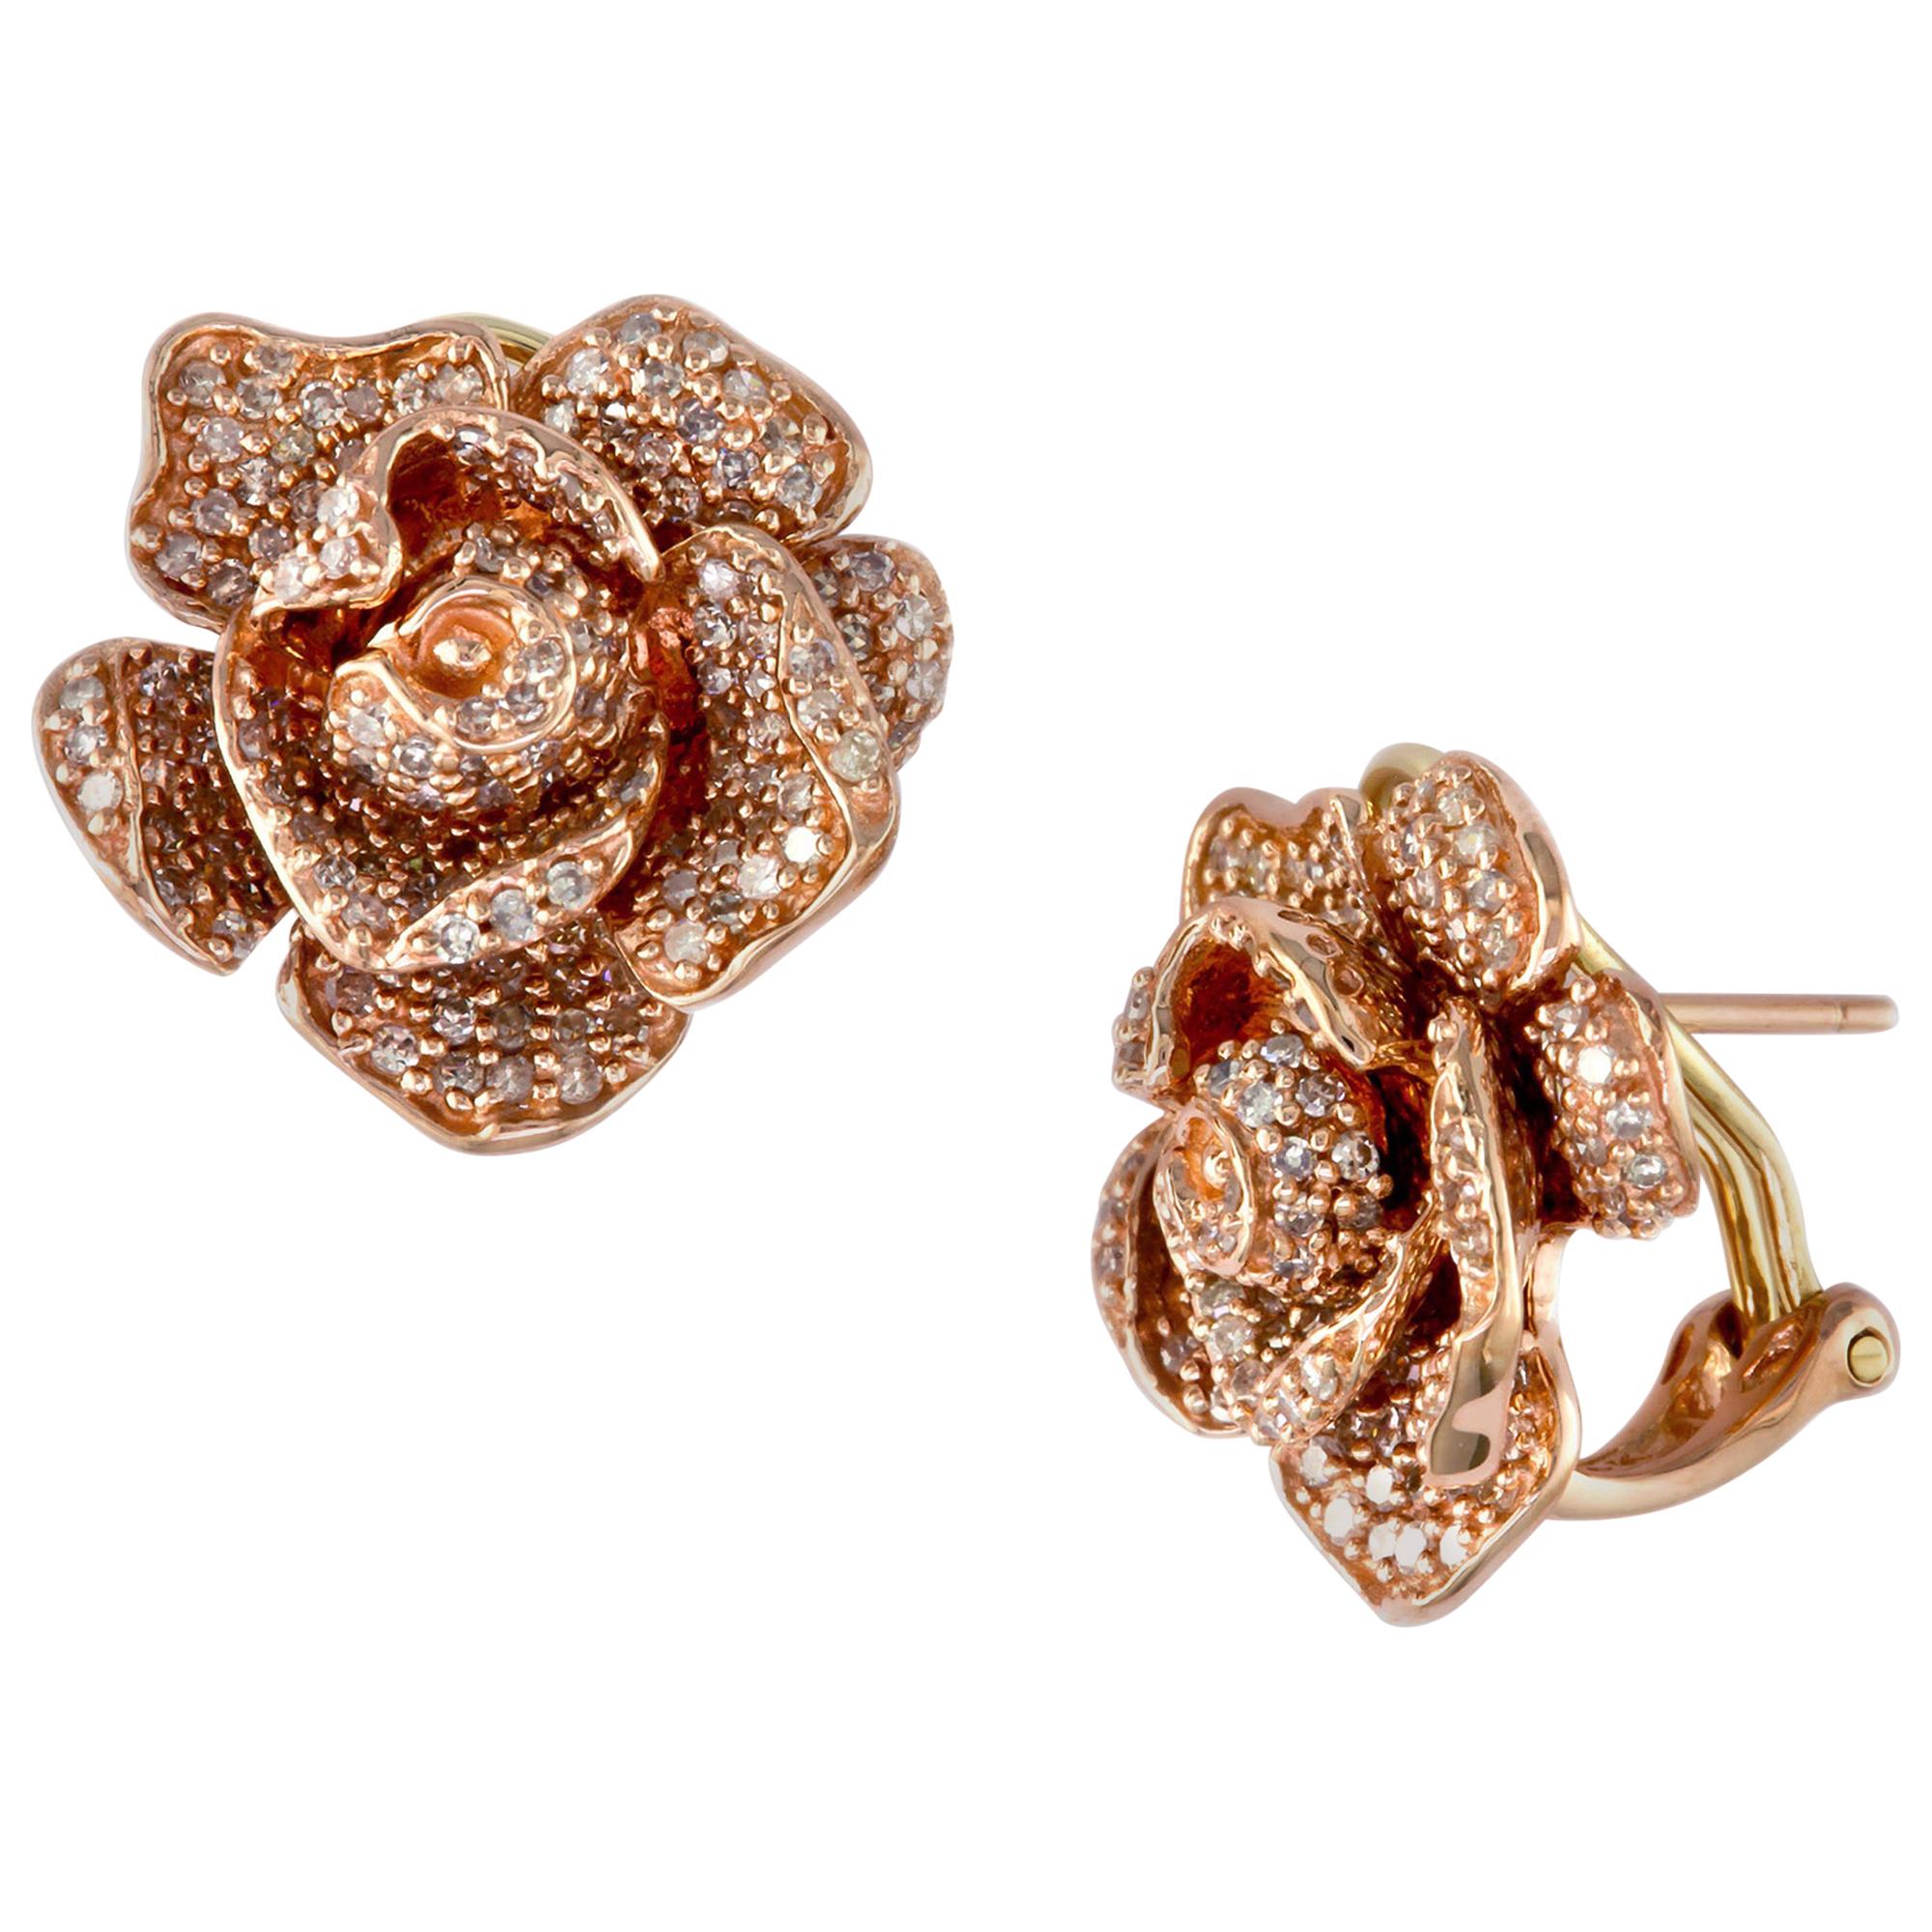 Designer Effy's Diamond Rose Flower Stud Omega back Earrings 14 Karat Rose Gold